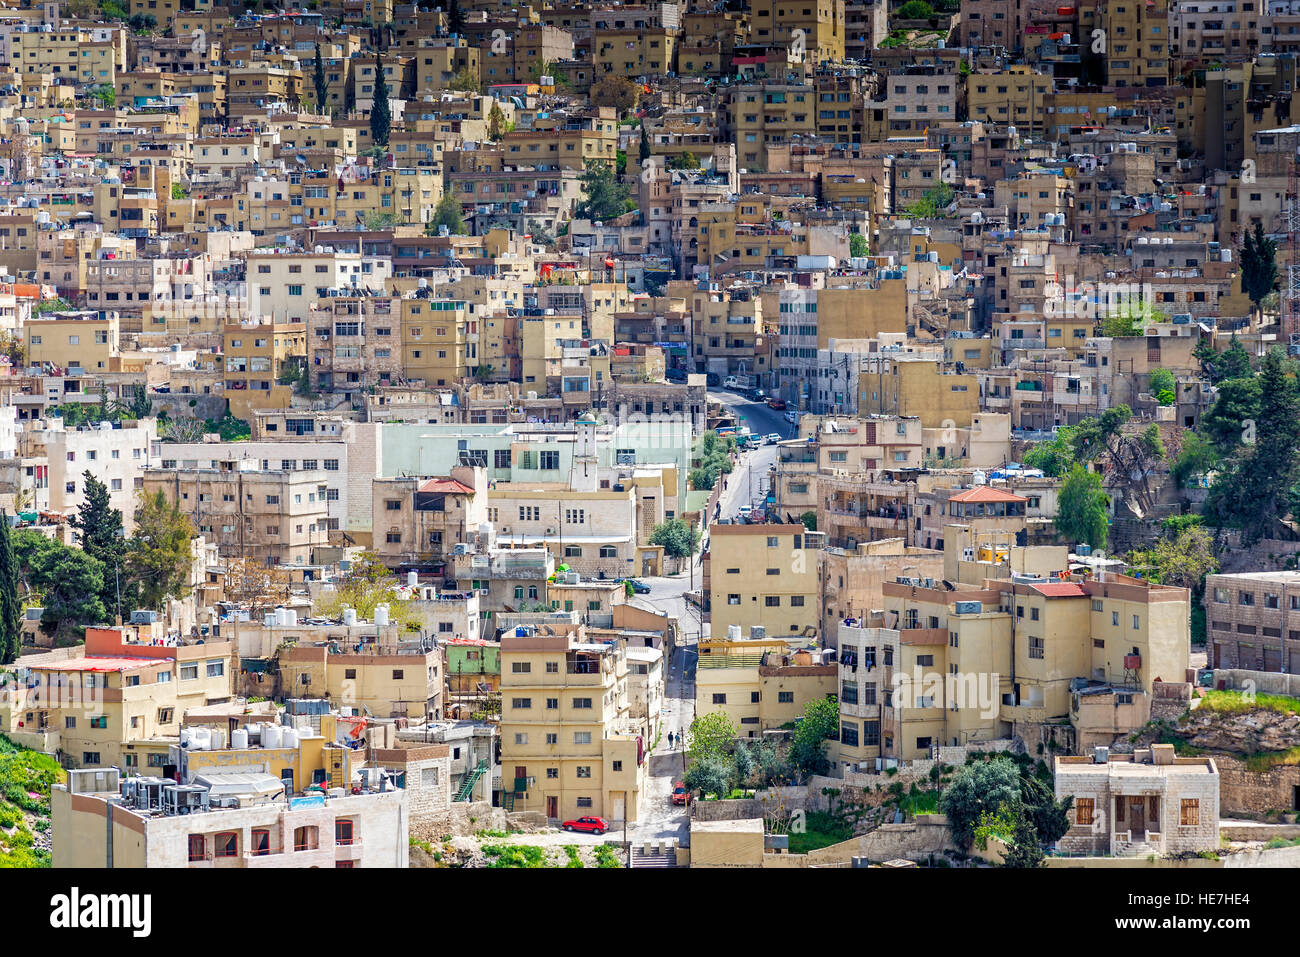 Amman, Jordanie - Avril 03, 2015 : district Al-yarmouk à Amman, la capitale et ville la plus peuplée de la Jordanie Banque D'Images